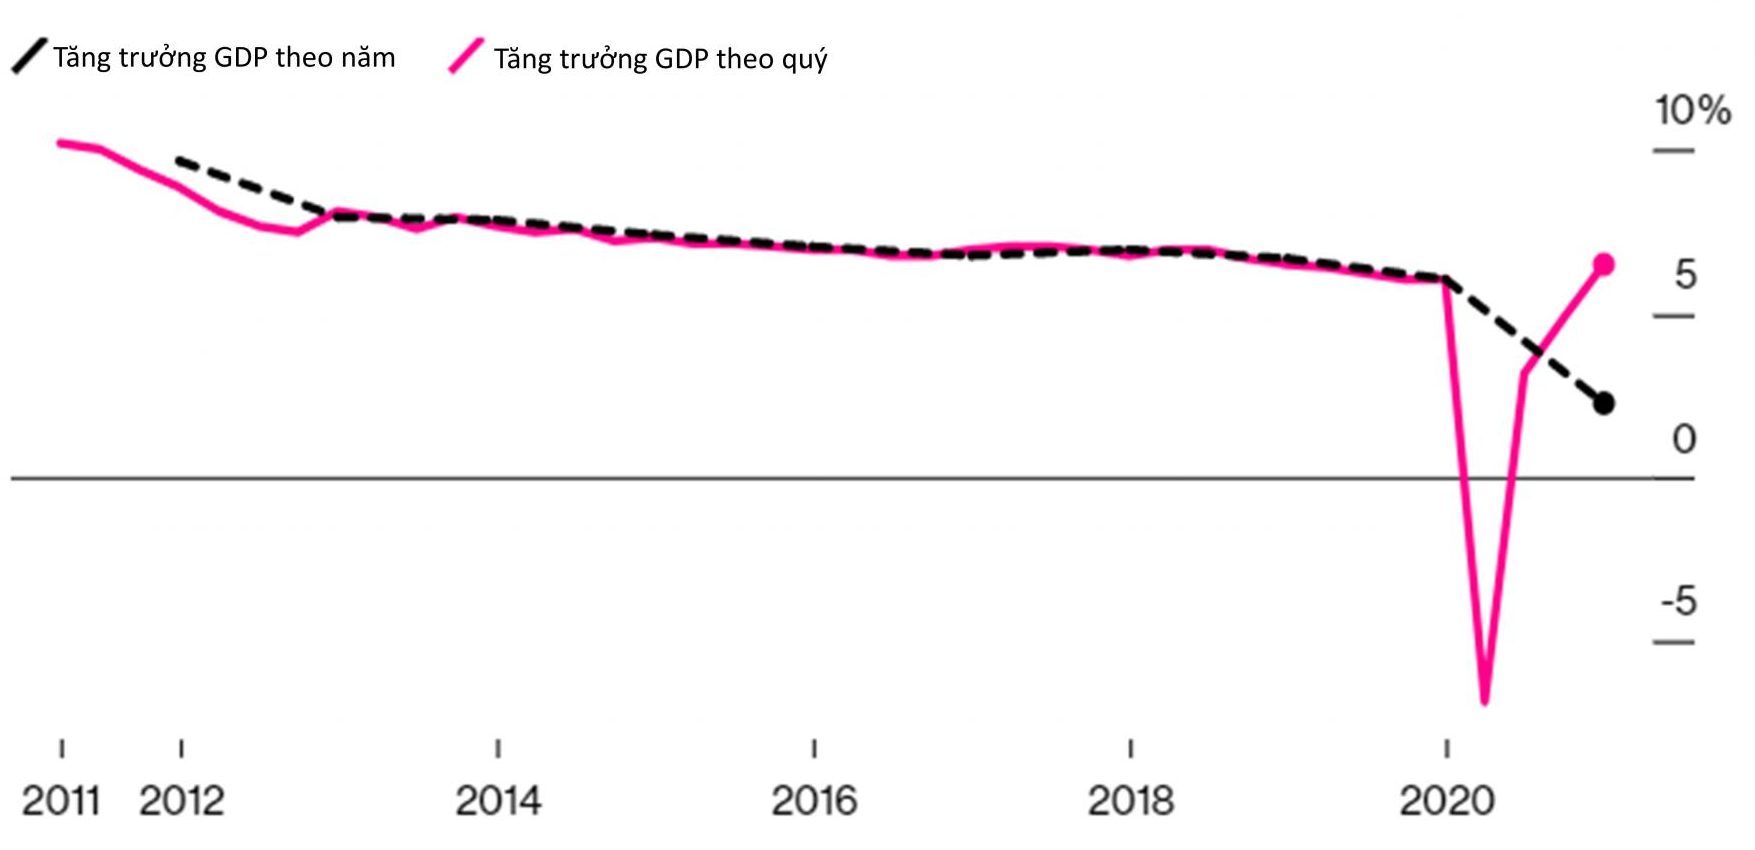 GDP của Trung Quốc năm 2020